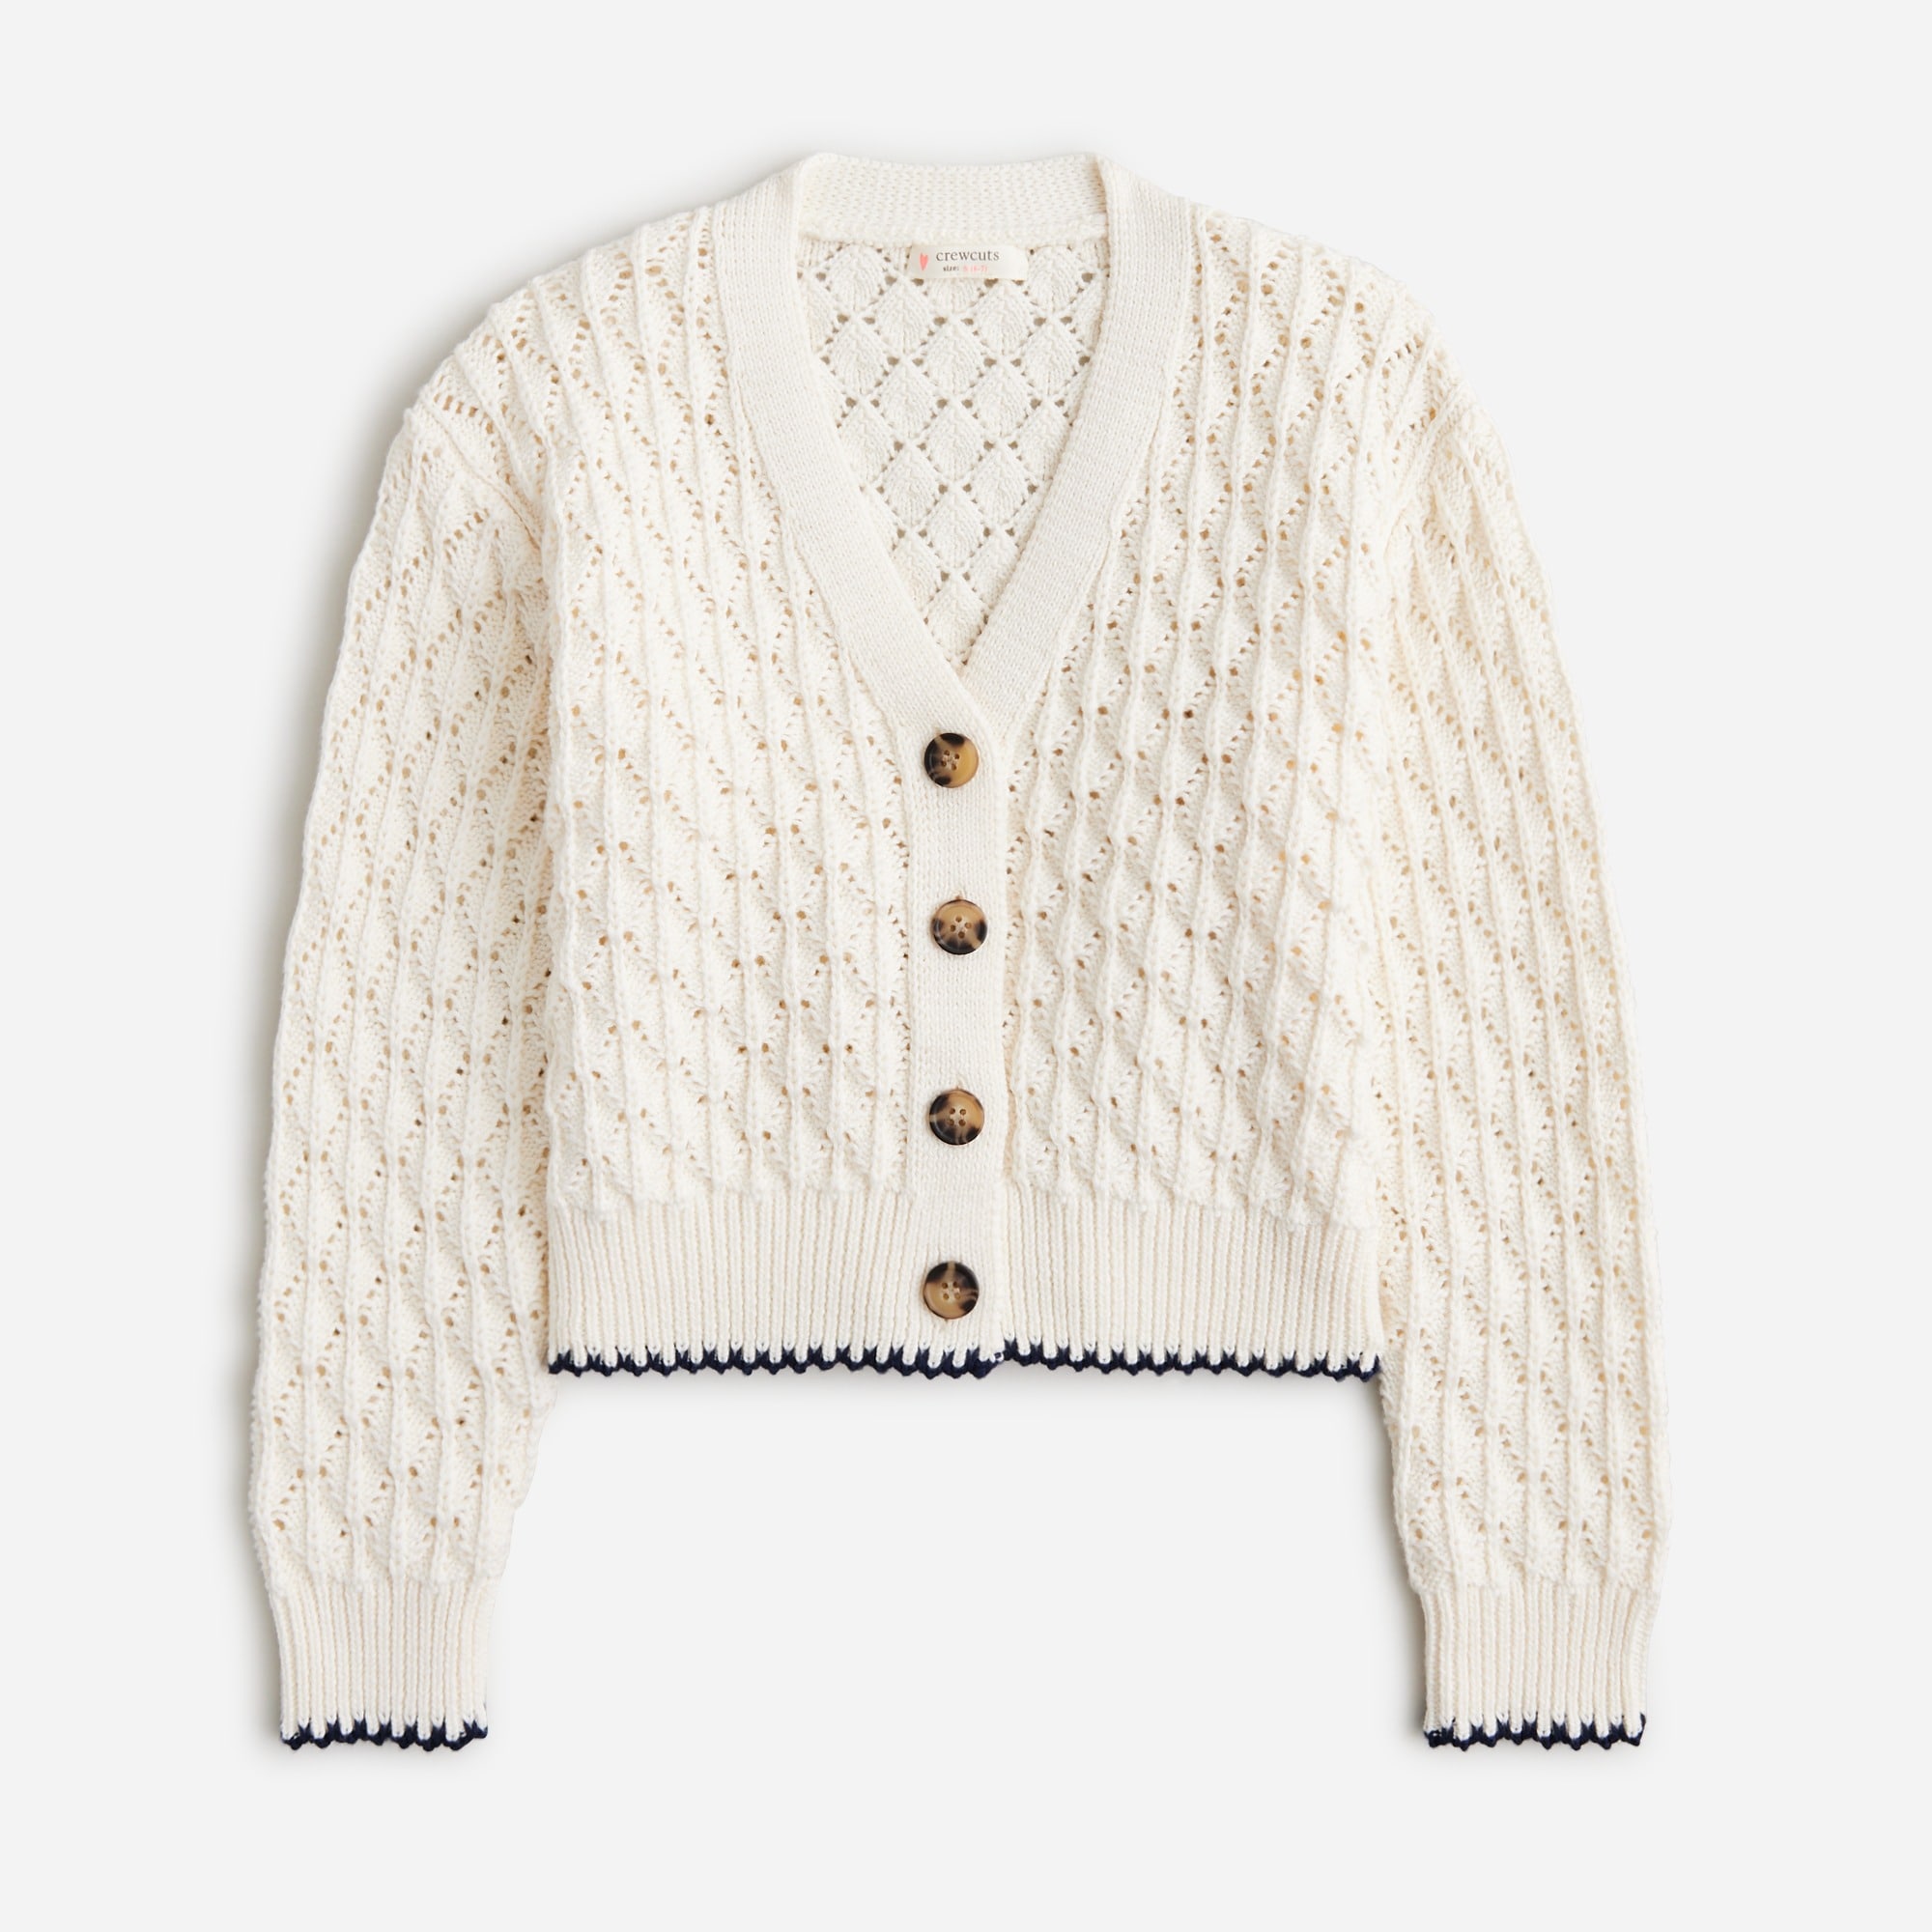  Girls' pointelle-stitch cardigan sweater in cotton